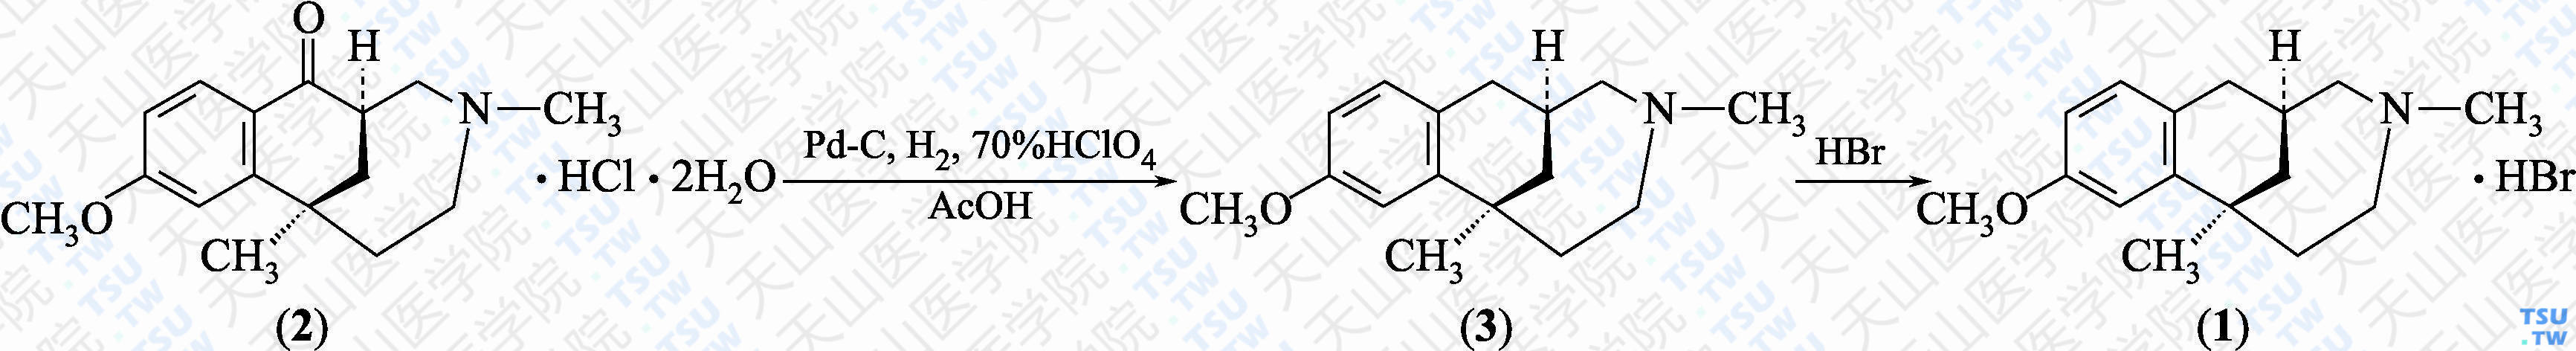 氢溴酸依他佐辛（分子式：C<sub>16</sub>H<sub>23</sub>NO·HBr）的合成方法路线及其结构式